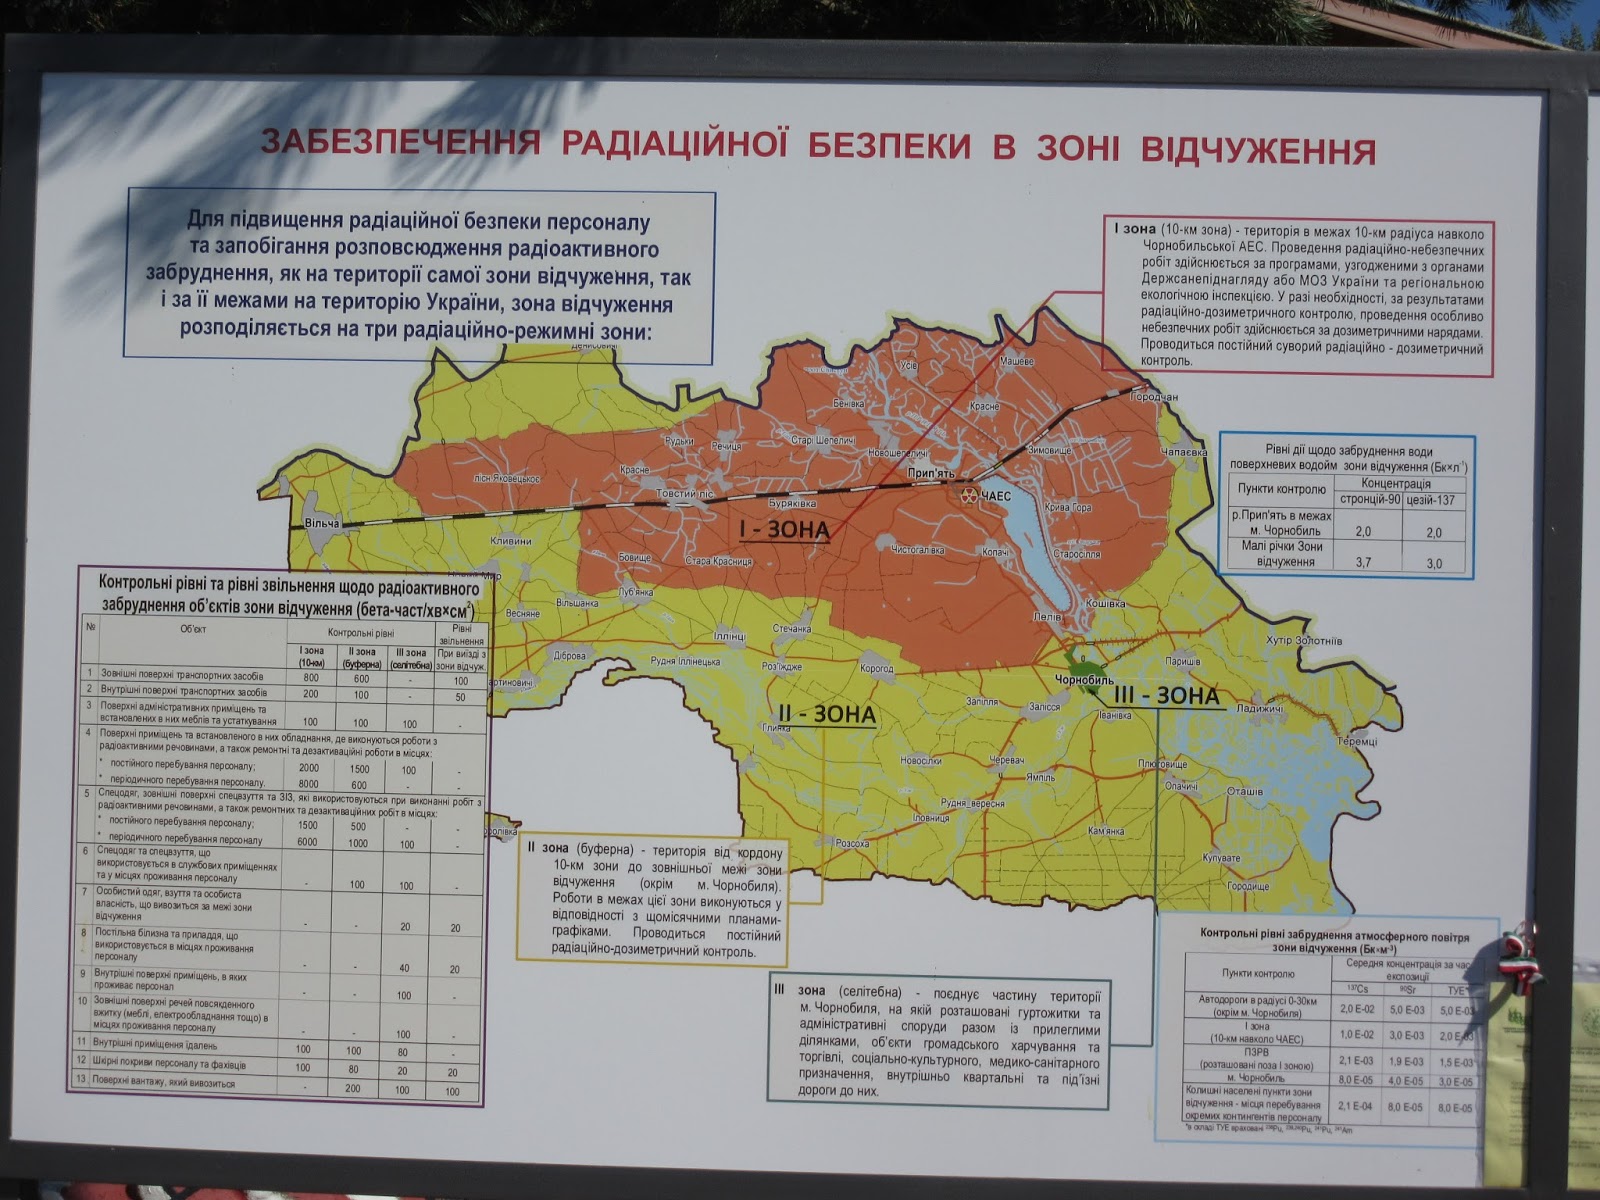 Проживания с правом на отселение. 10 Километровая зона Чернобыль. Территория зоны отчуждения Чернобыльской АЭС. Территория отчуждения Чернобыльской АЭС на карте. Границы зоны отчуждения Чернобыльской АЭС на карте.